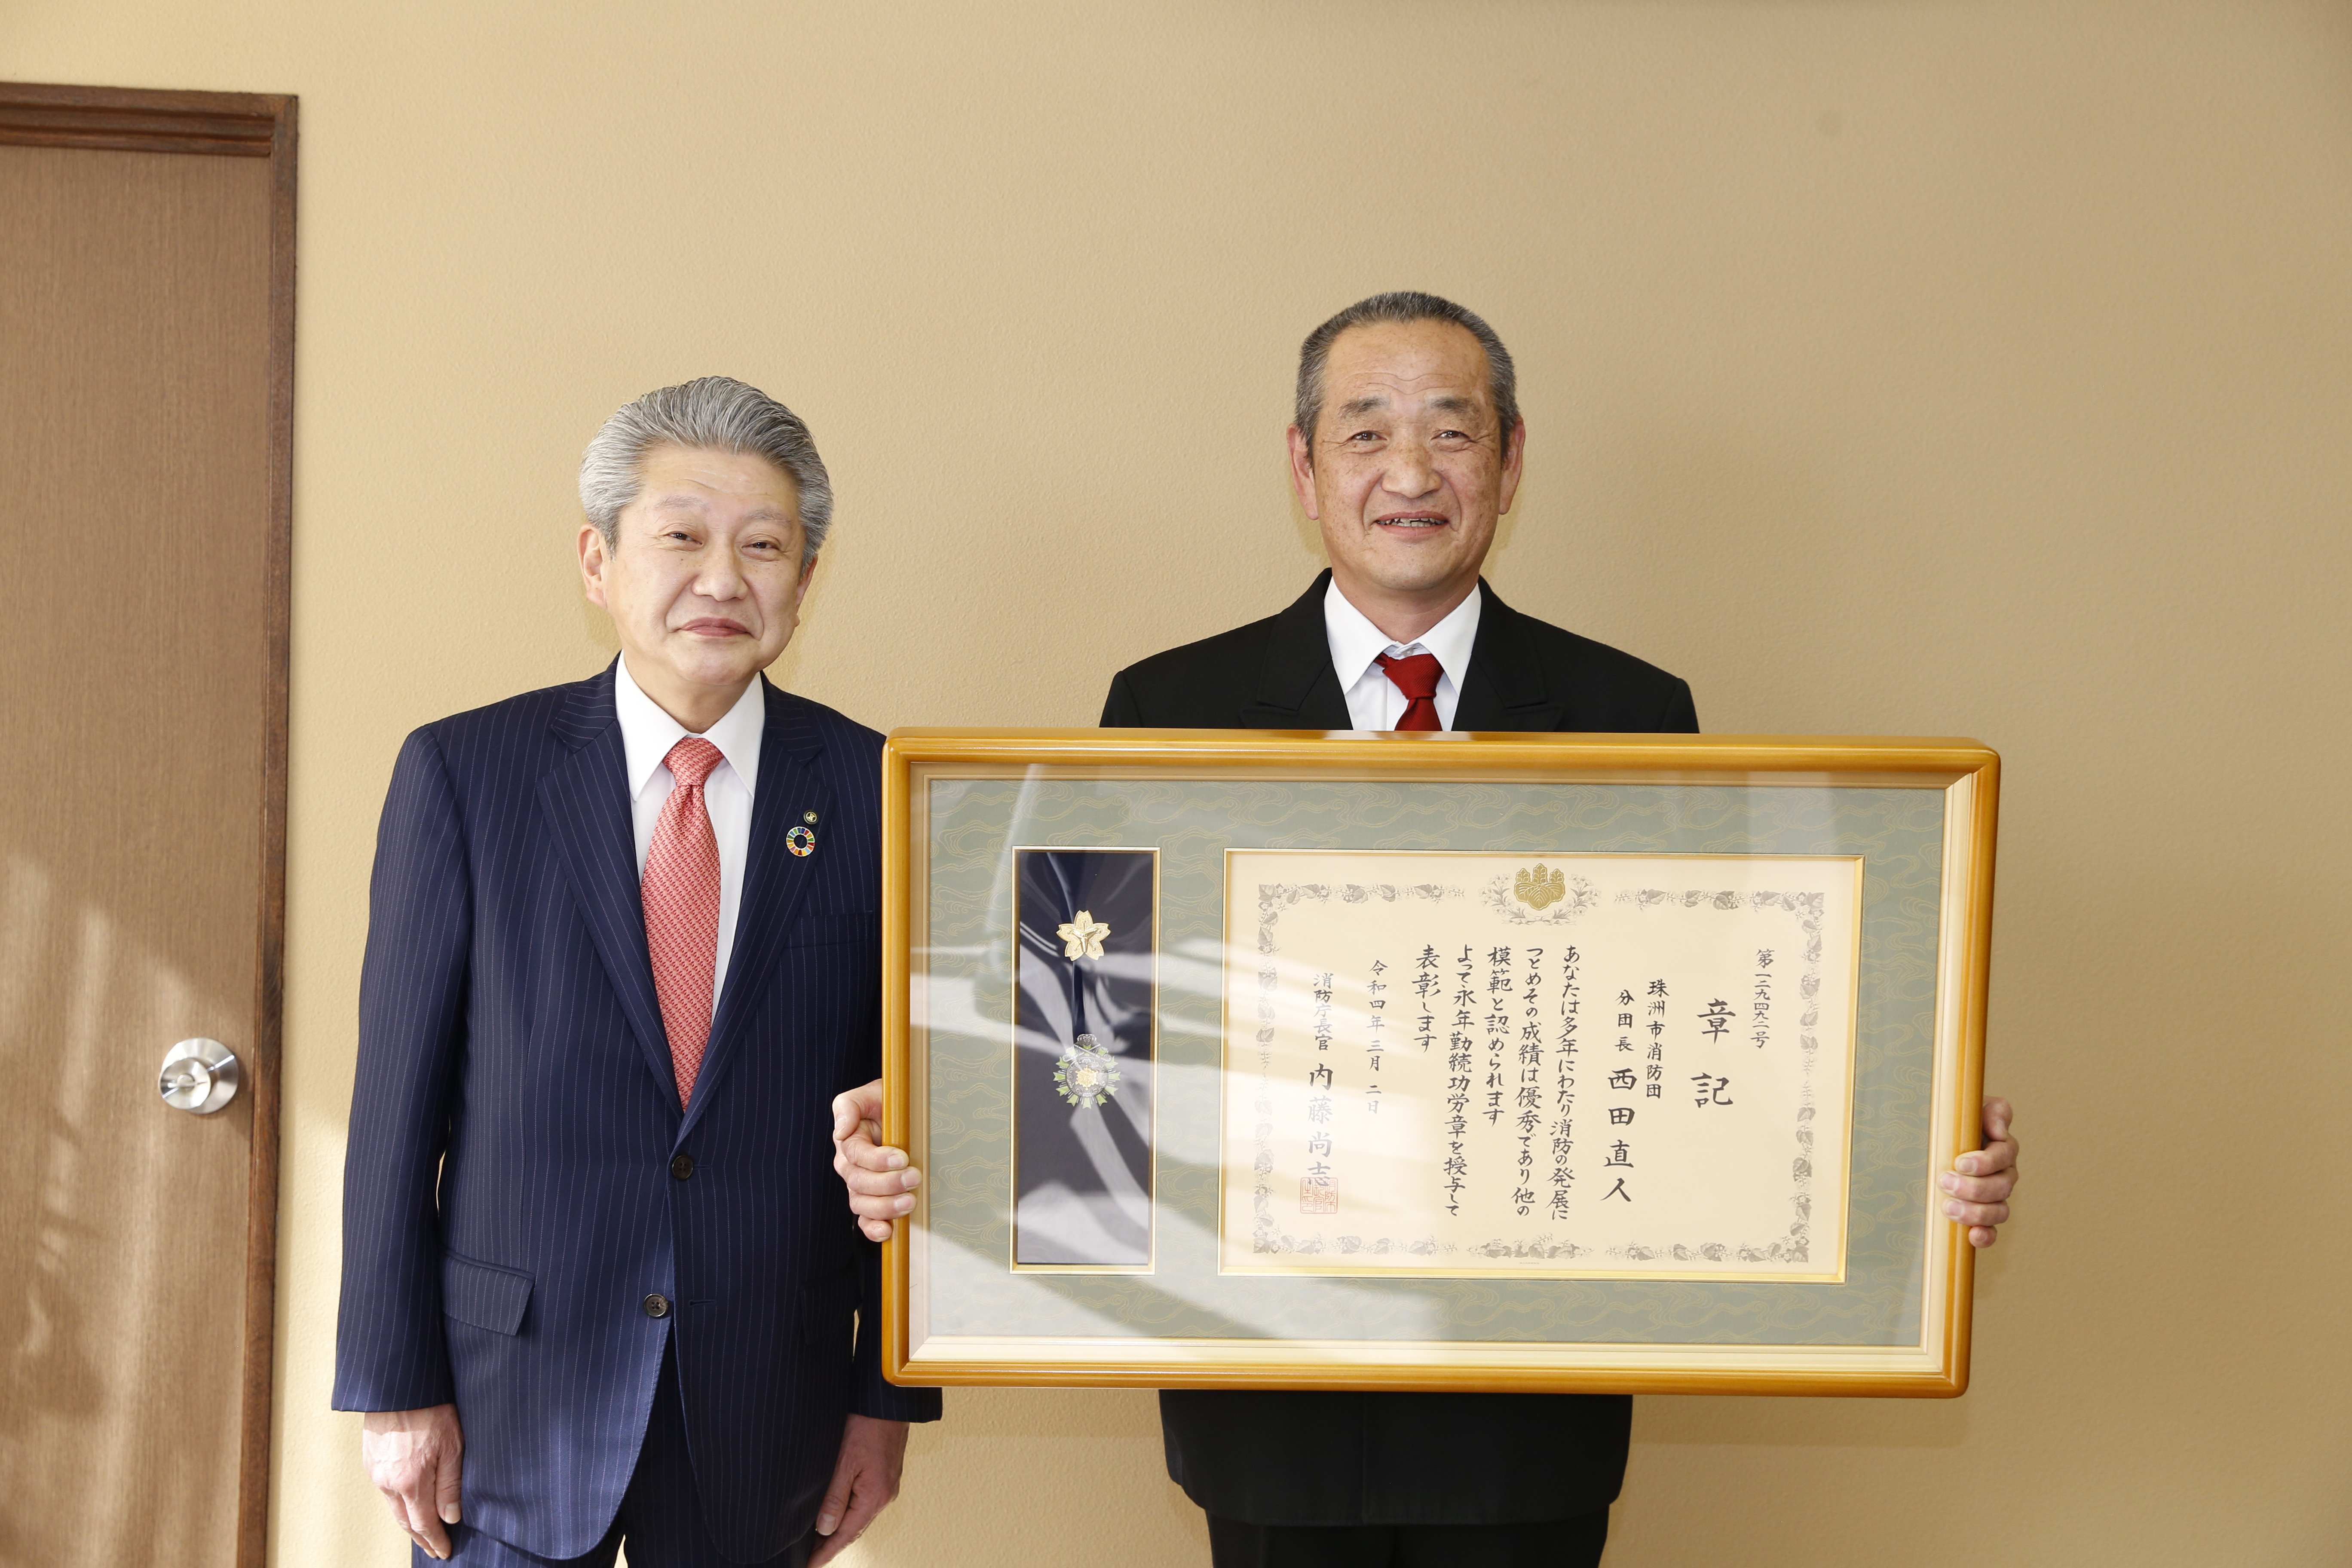 消防庁長官表彰永年勤続功労章を受章した西田さんの画像